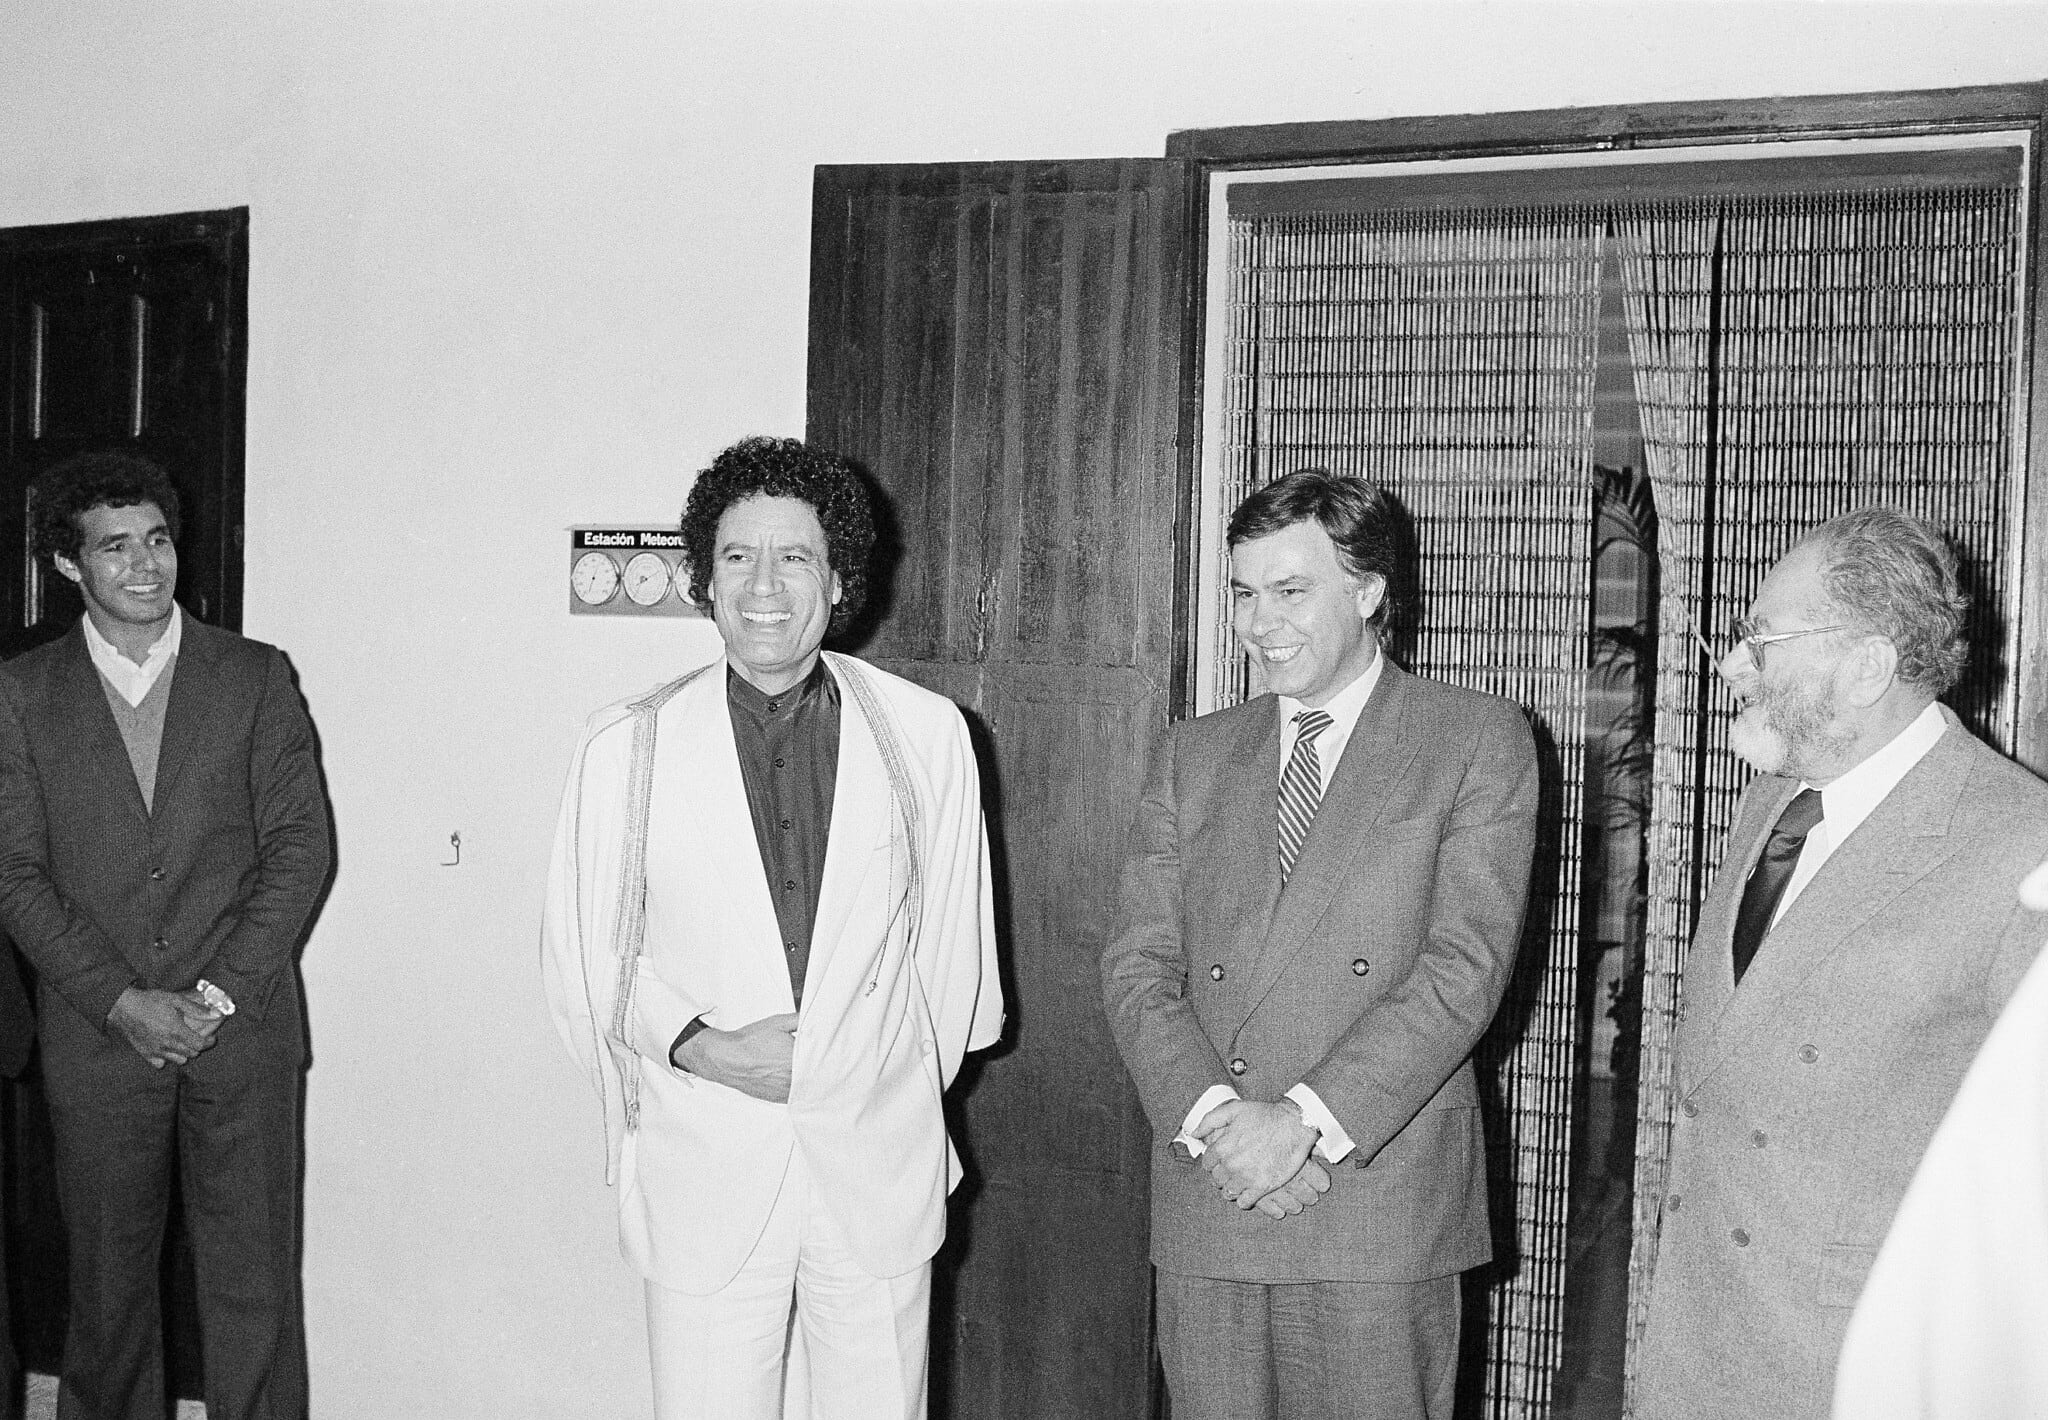 קנצלר אוסטריה לשעבר, ברונו קרייסקי, ראש ממשלת ספרד פליפה גונזלס ונשיא לוב מועמר קדאפי, בפגישה ספונטנית בפלמה דה מיורקה, ספרד, 19 בדצמבר 1984 (צילום: AP Photo/Dominique Mollard)